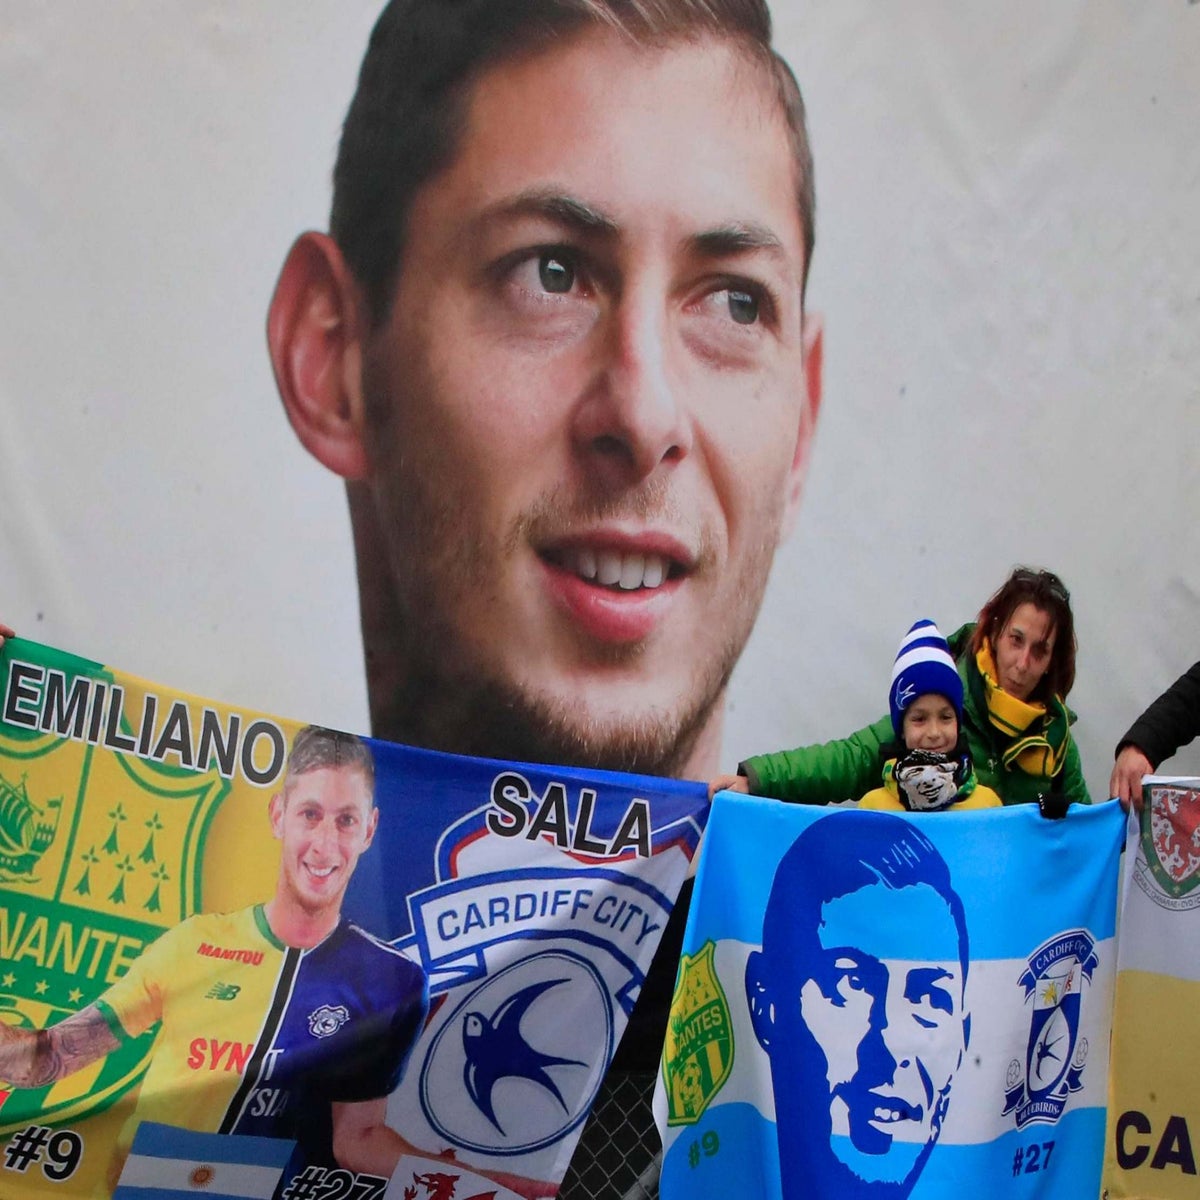 Em Cardiff, começa o julgamento pela morte do argentino Emiliano Sala, Esporte